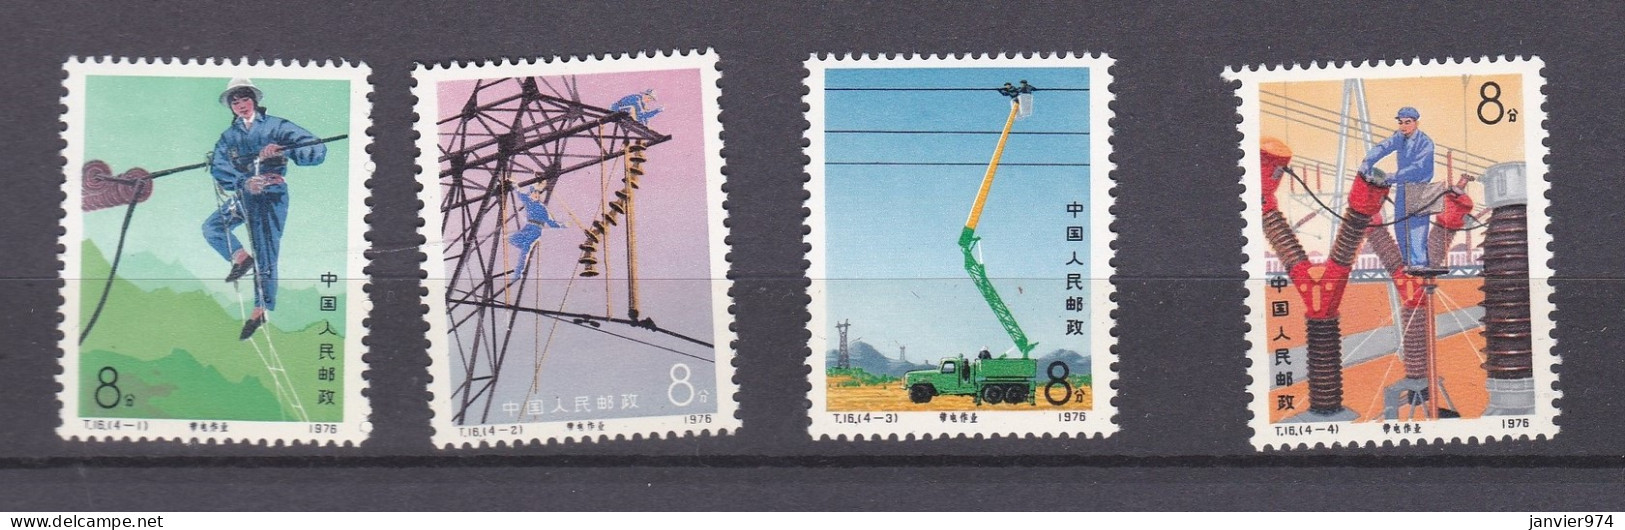 Chine 1976 La Serie Complete  Entretien Des Lignes électriques, 4 Timbres Neufs 1296 à 1299 - Ungebraucht